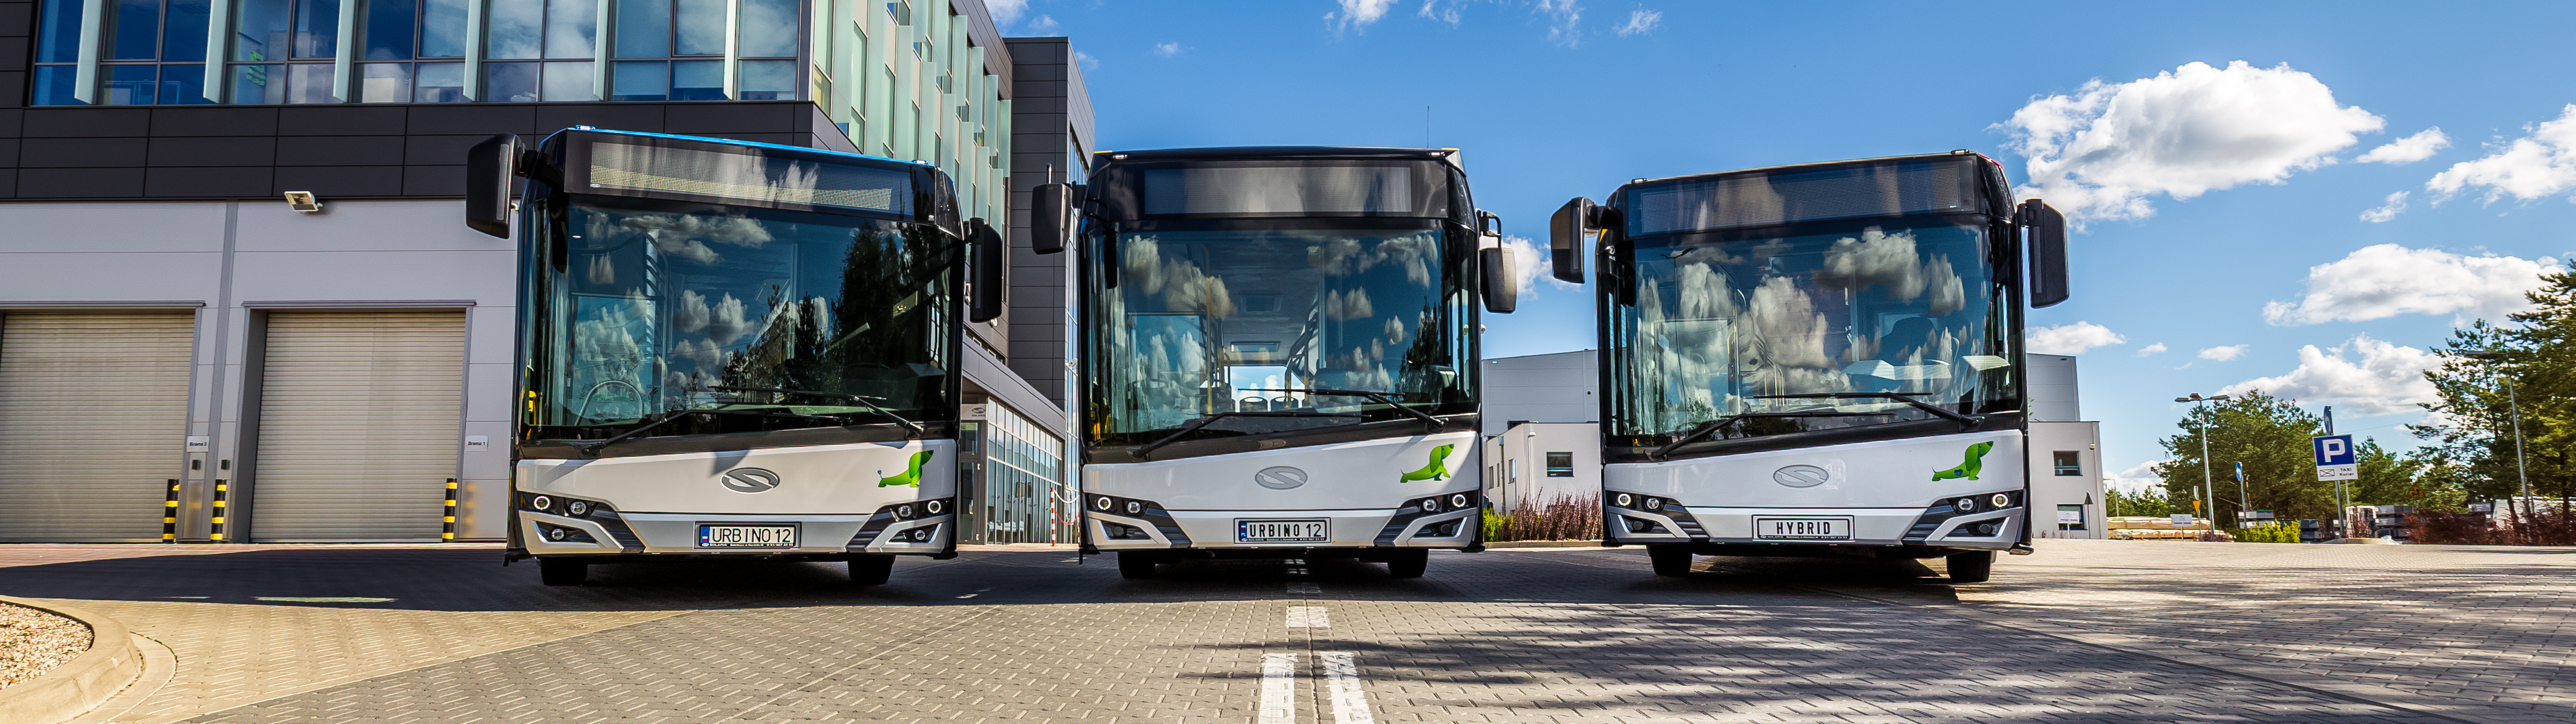 Transexpo Kielce 2018: Solaris displays three buses